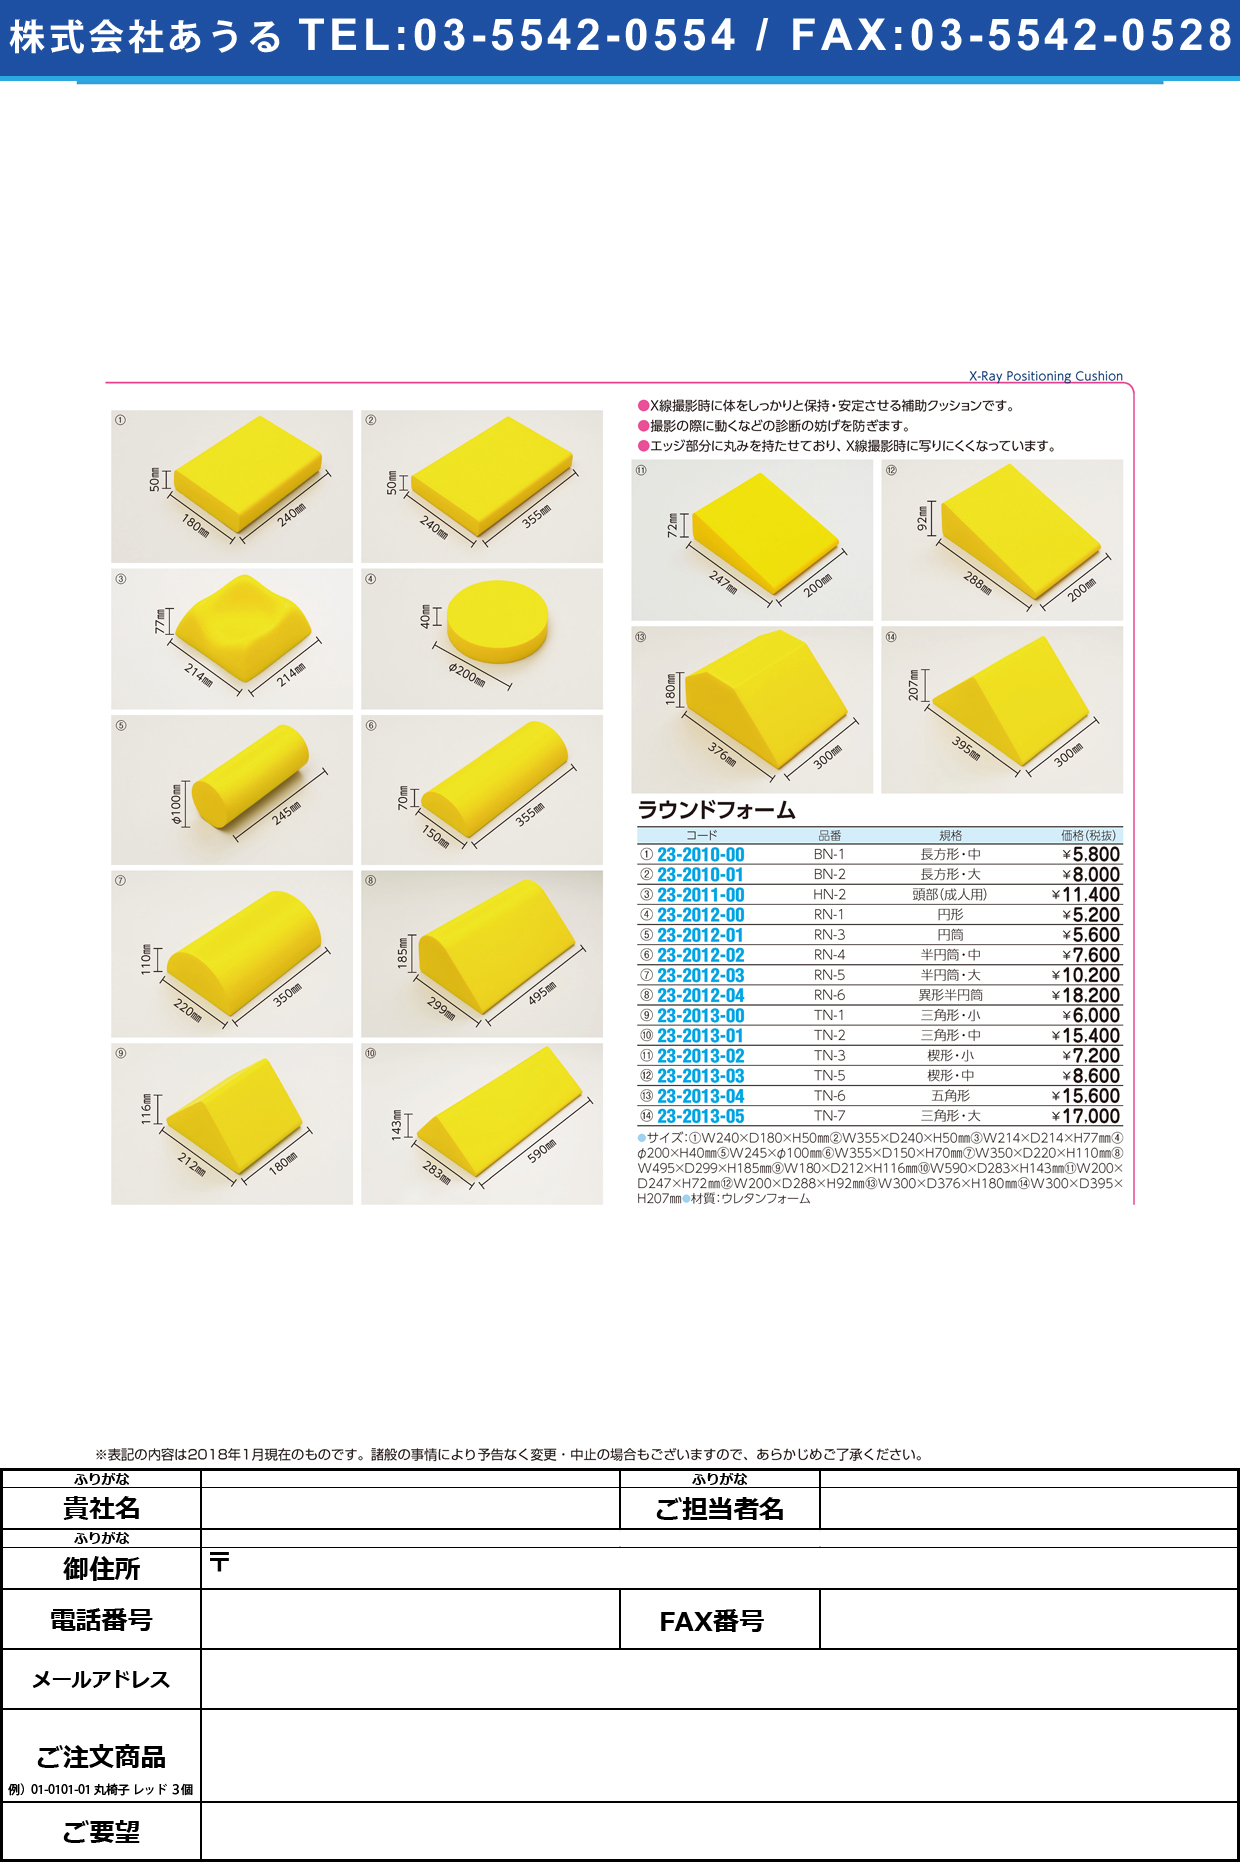 (23-2013-04)ラウンドフォーム（五角形） TN-6 ﾗｳﾝﾄﾞﾌｫｰﾑ(ｺﾞｶｸｹｲ)【1個単位】【2019年カタログ商品】